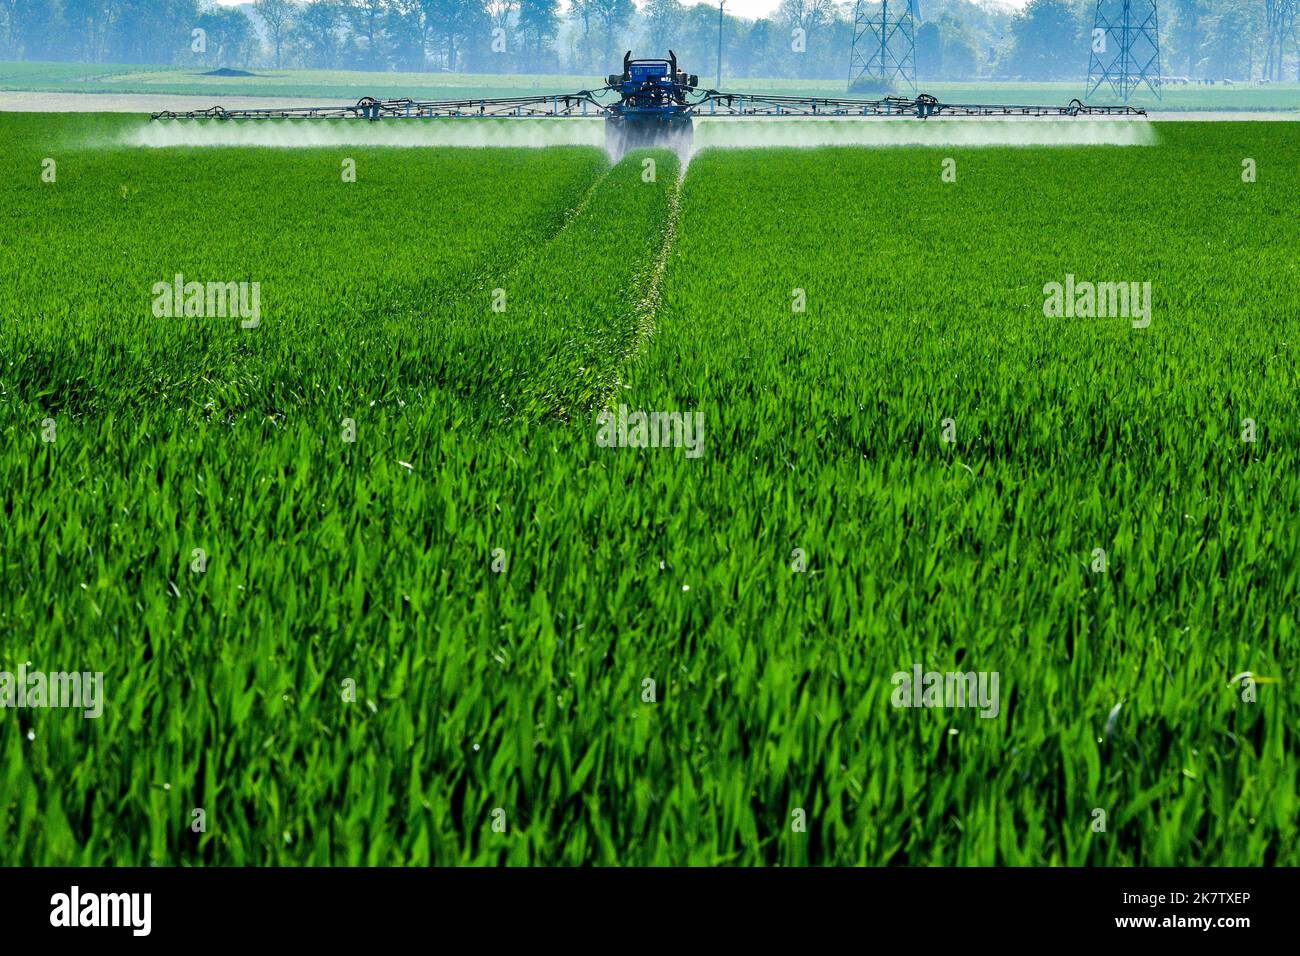 Pesticidi spruzzati su un campo di cereali nel dipartimento della Senna Marittima (Francia settentrionale). Foto Stock